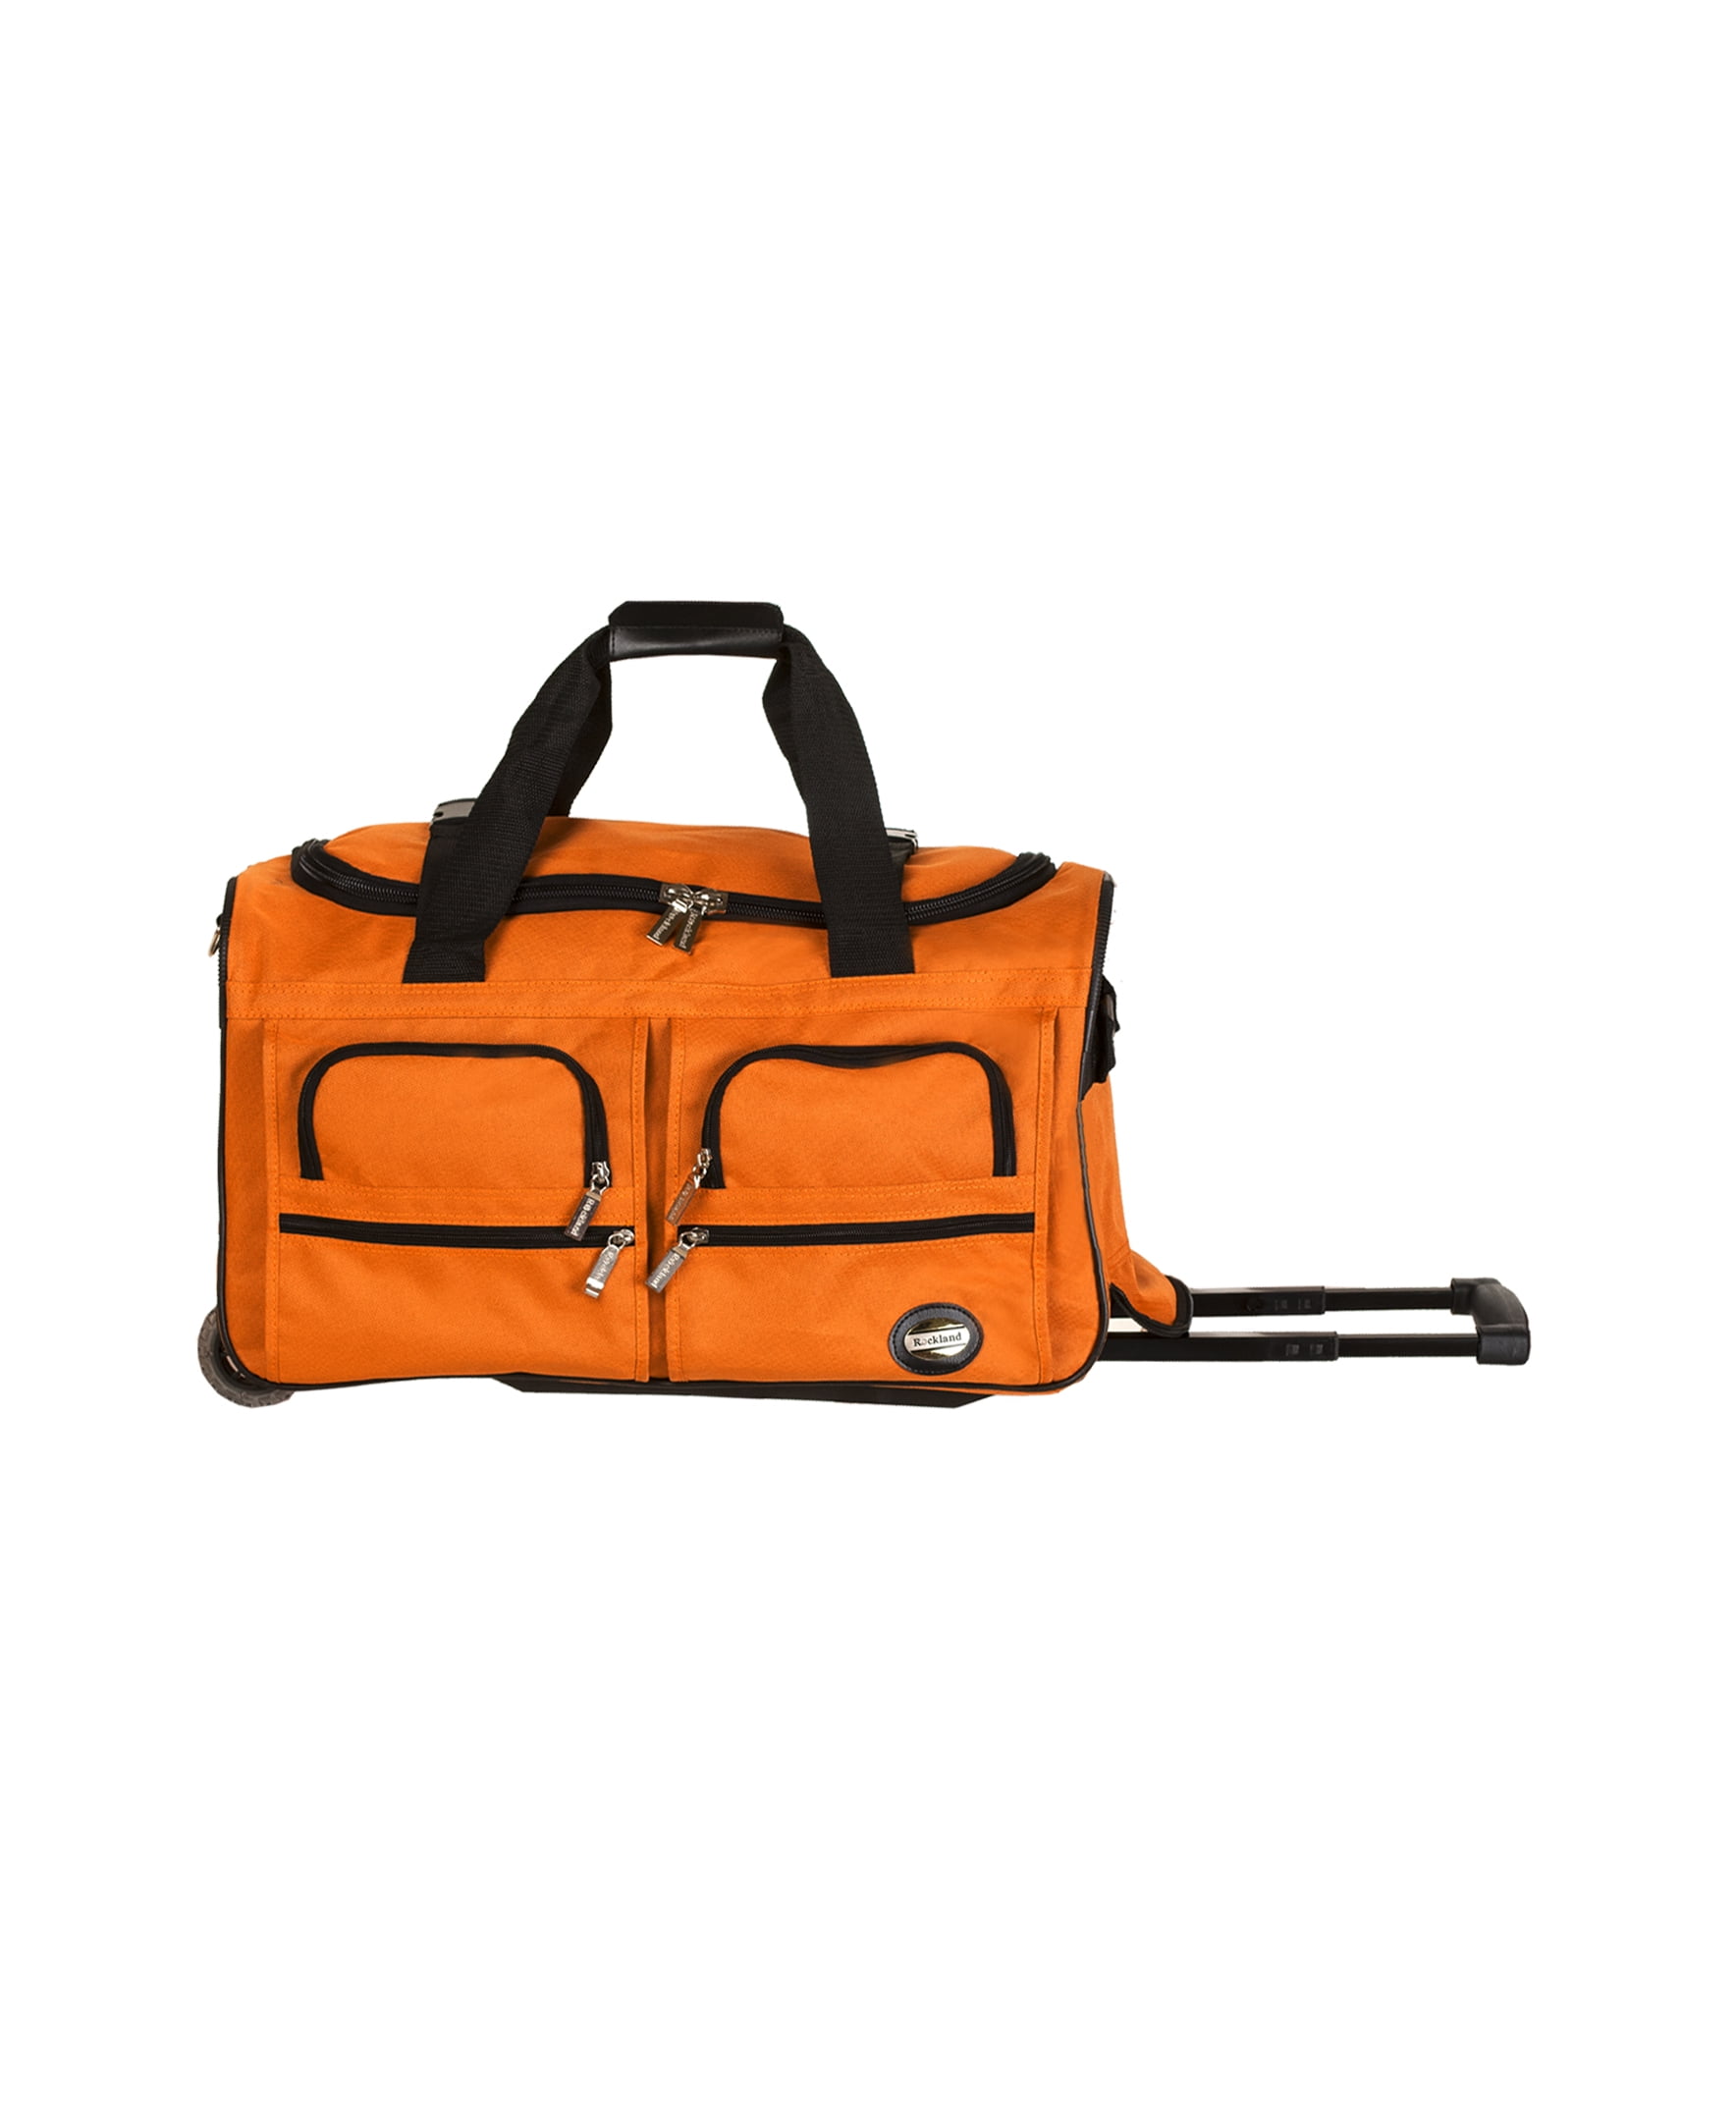 22 Inch Wheeled Duffel Bag | lupon.gov.ph